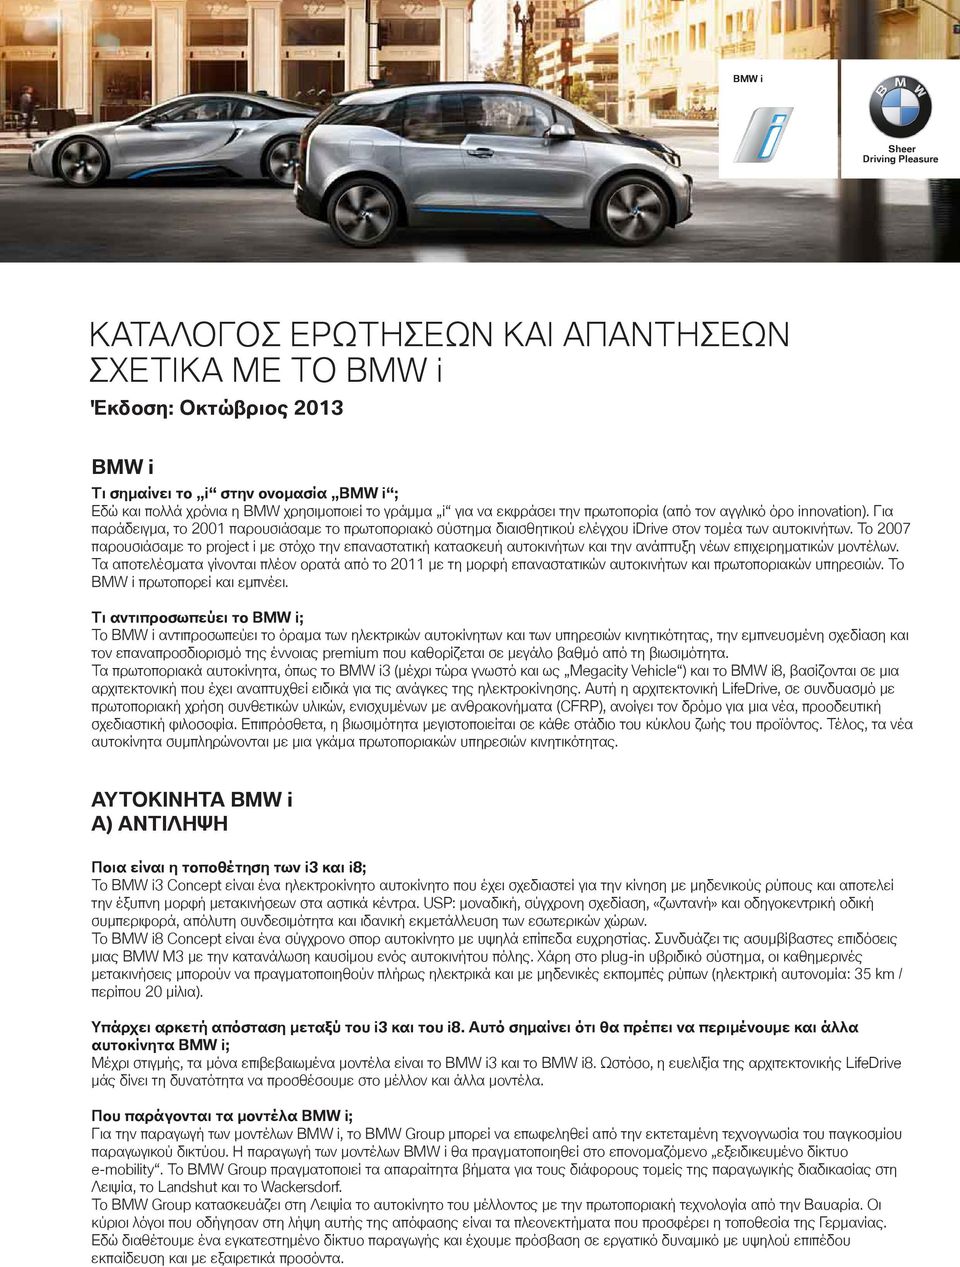 Το 2007 παρουσιάσαμε το project i με στόχο την επαναστατική κατασκευή αυτοκινήτων και την ανάπτυξη νέων επιχειρηματικών μοντέλων.